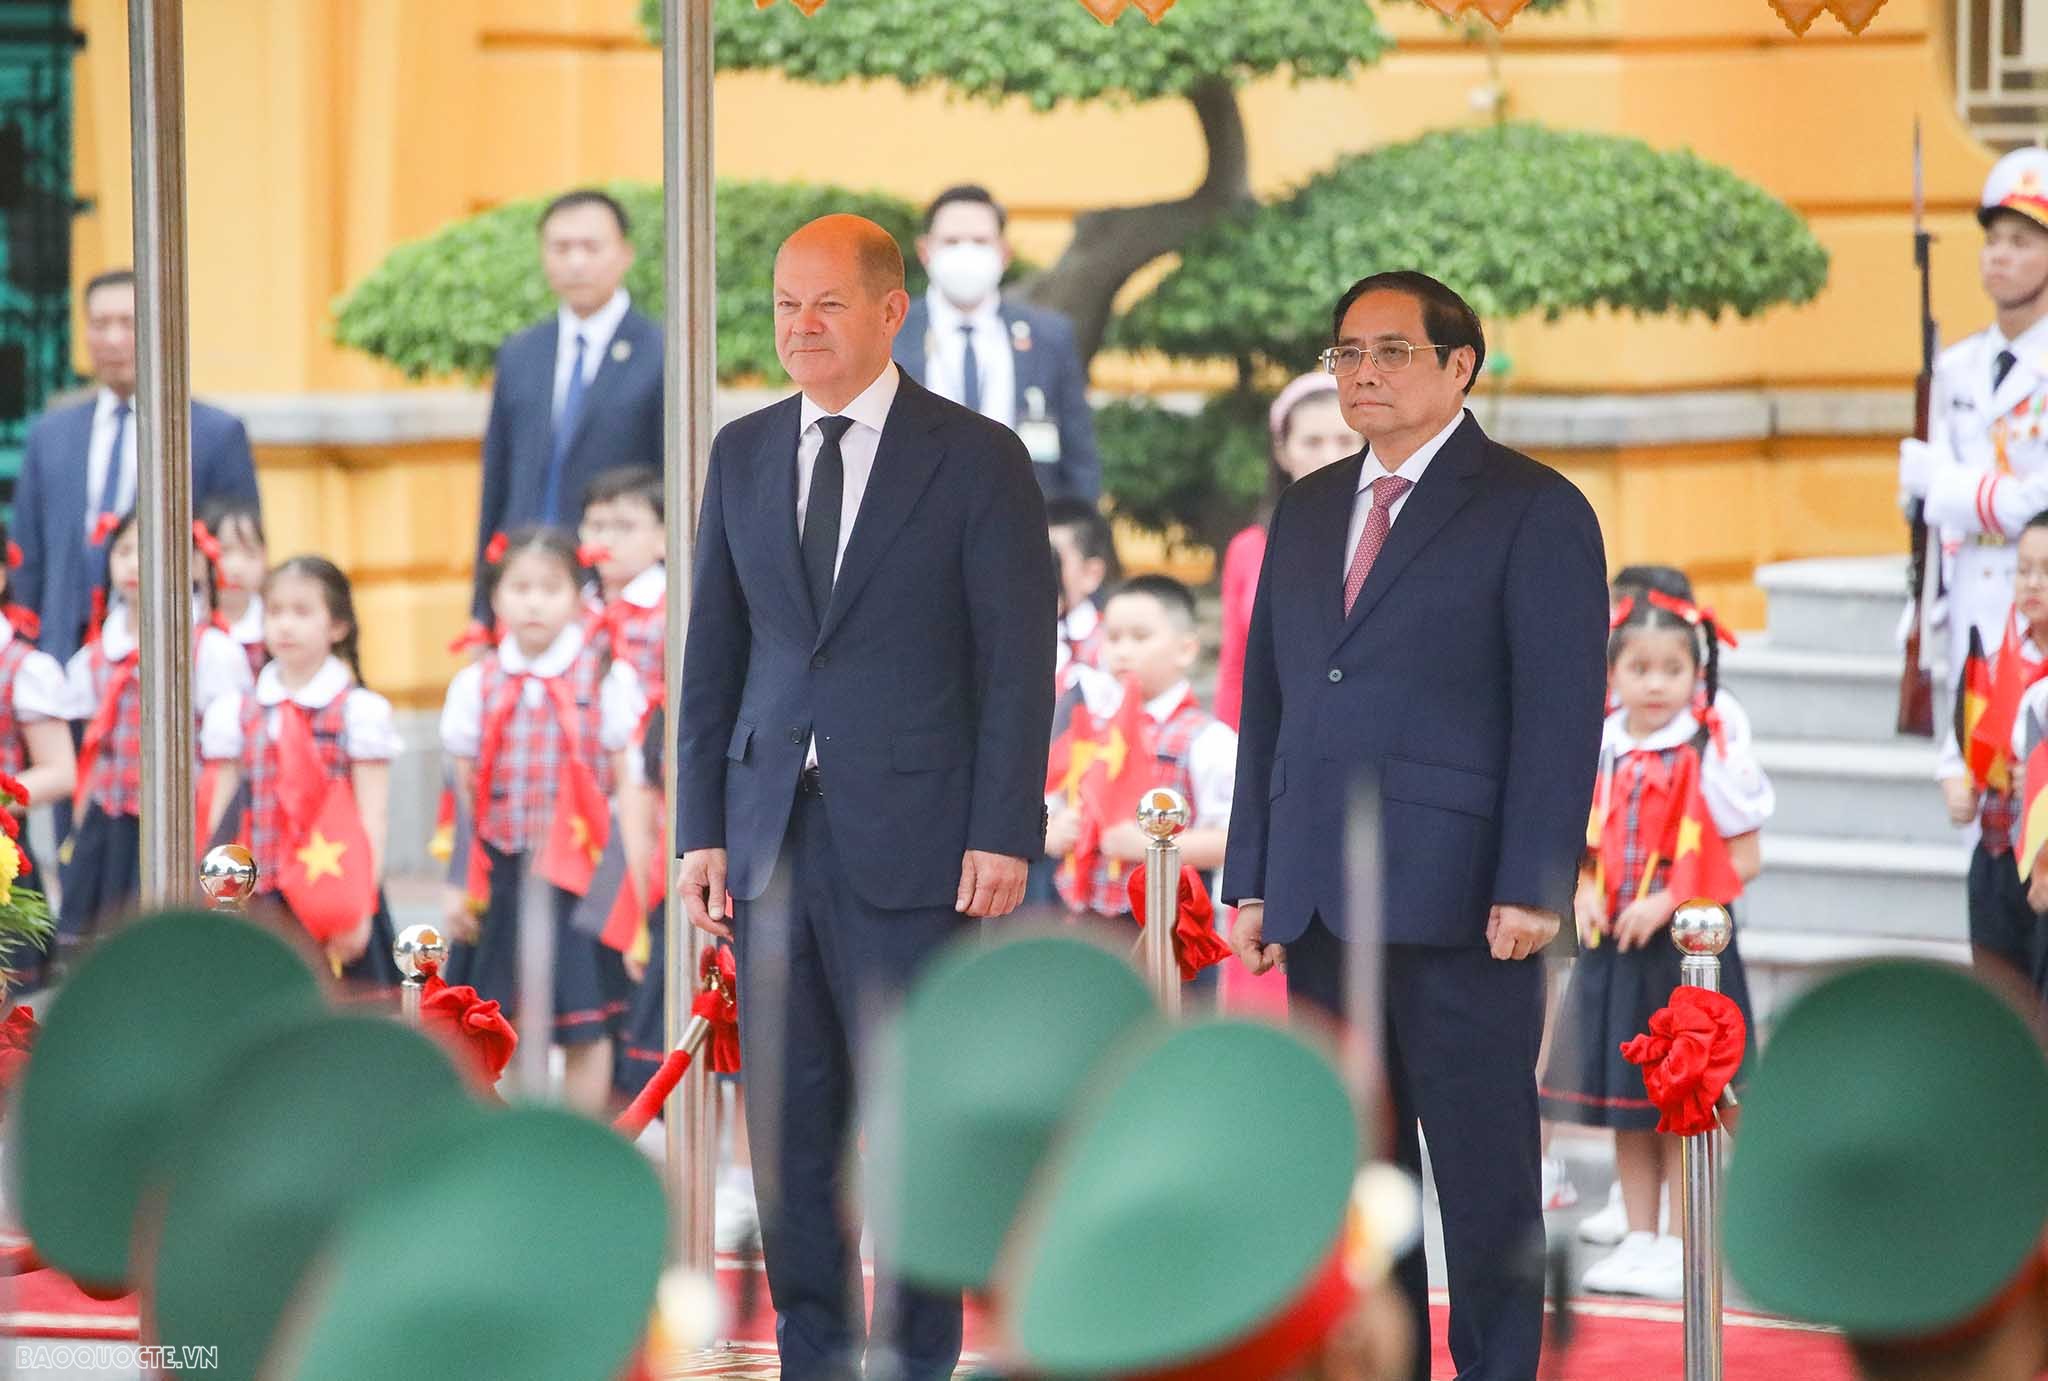 Đây là chuyến thăm Việt Nam đầu tiên của ông Olaf Scholz đến Việt Nam trên cương vị là Thủ tướng Đức. Việt Nam là một trong các điểm đến trong chuỗi công du khu vực Đông Á của Thủ tướng Scholz.